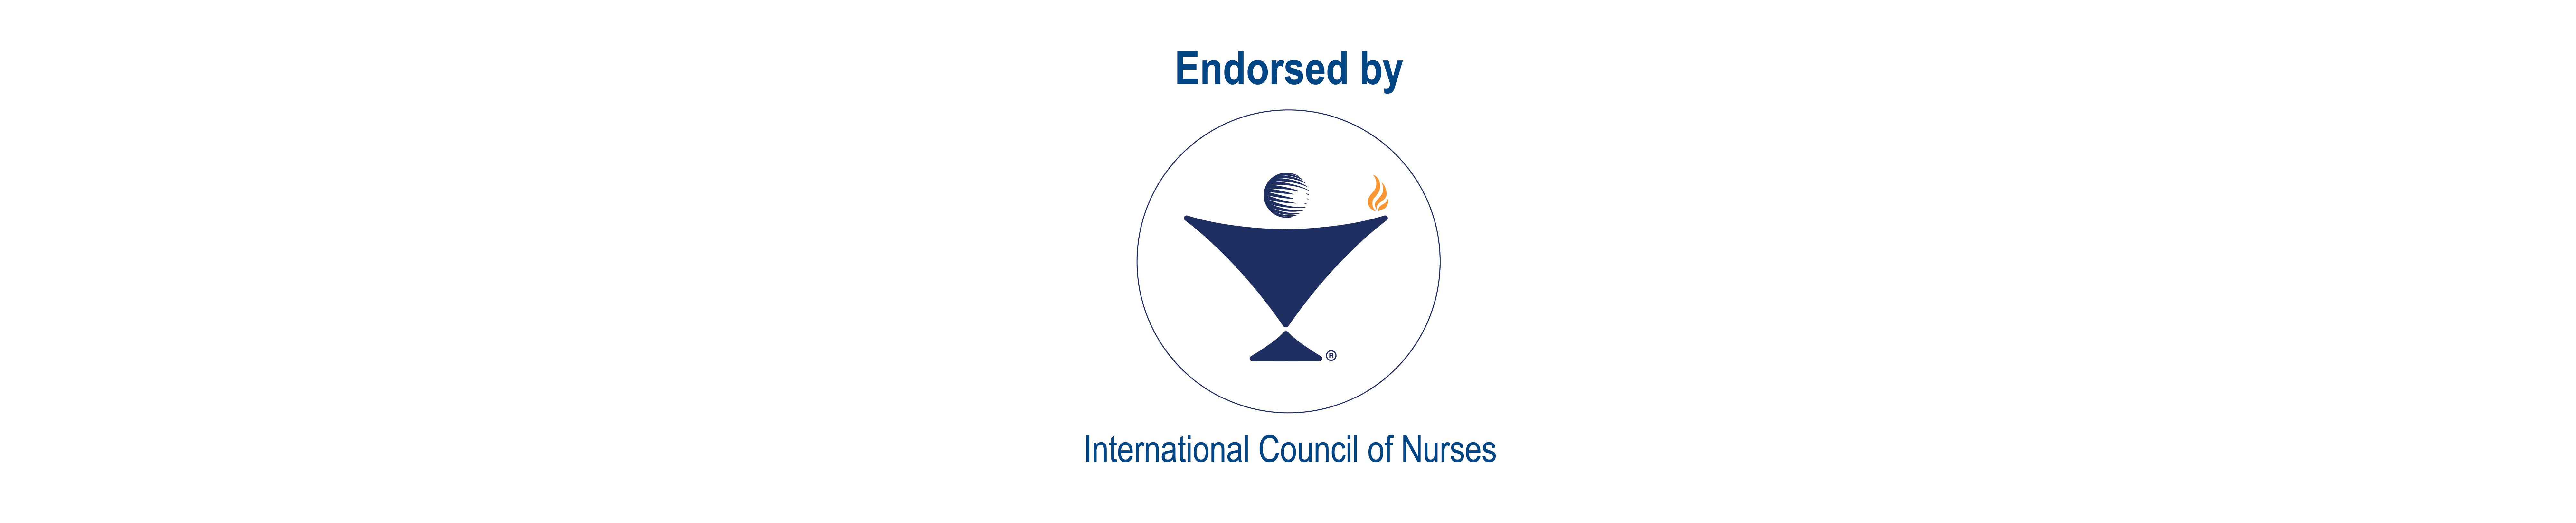 ICN endorsed logo